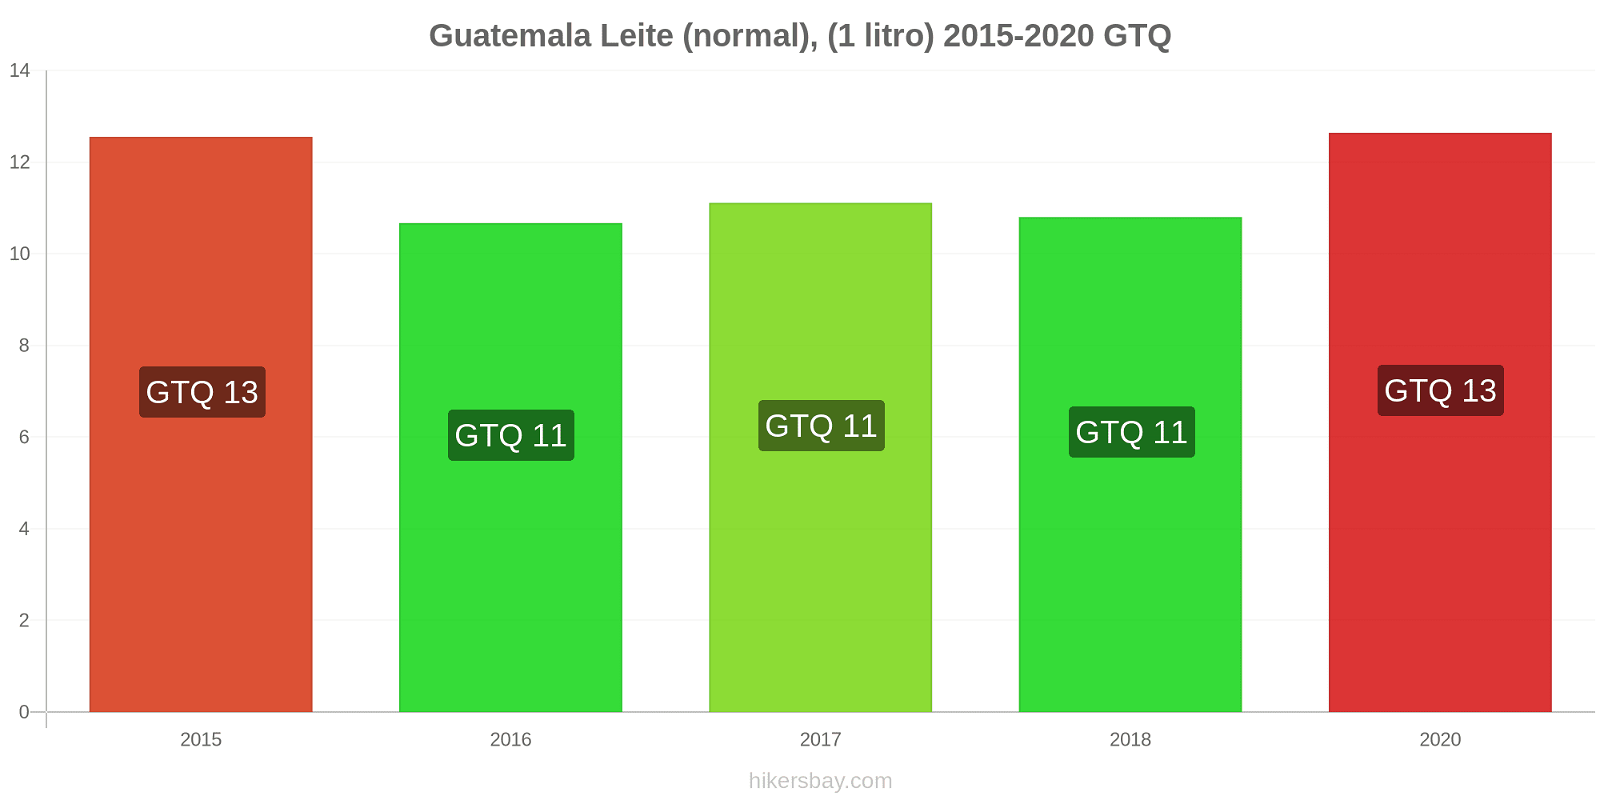 Guatemala variação de preço (Regular), leite (1 litro) hikersbay.com